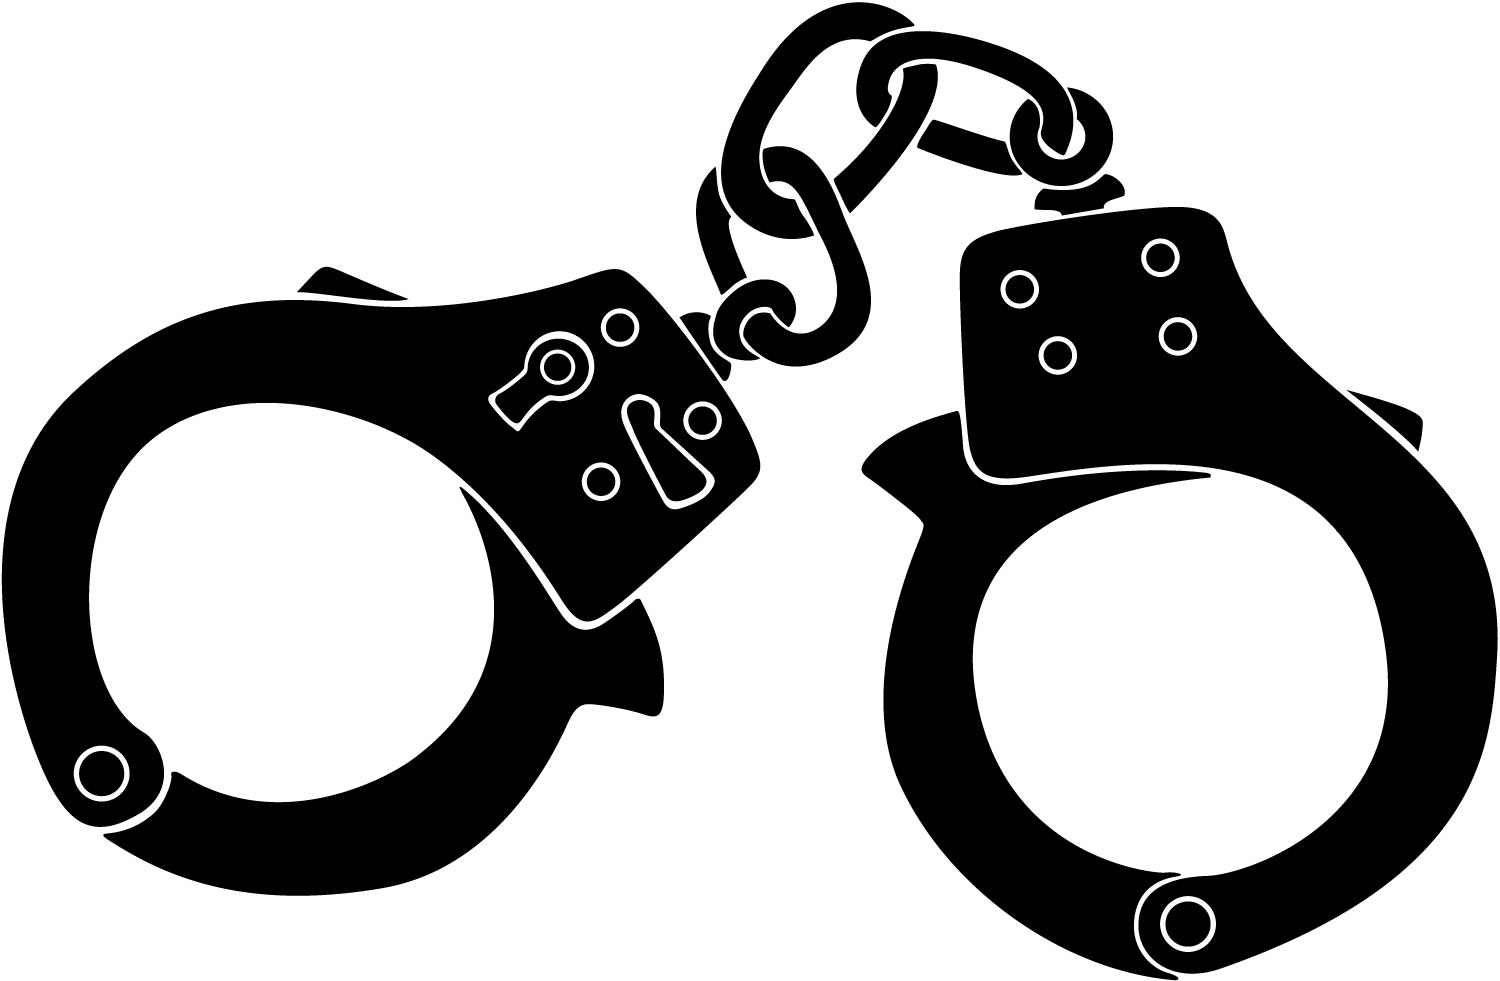 Free handcuffs cliparts download. Chain clipart handcuff